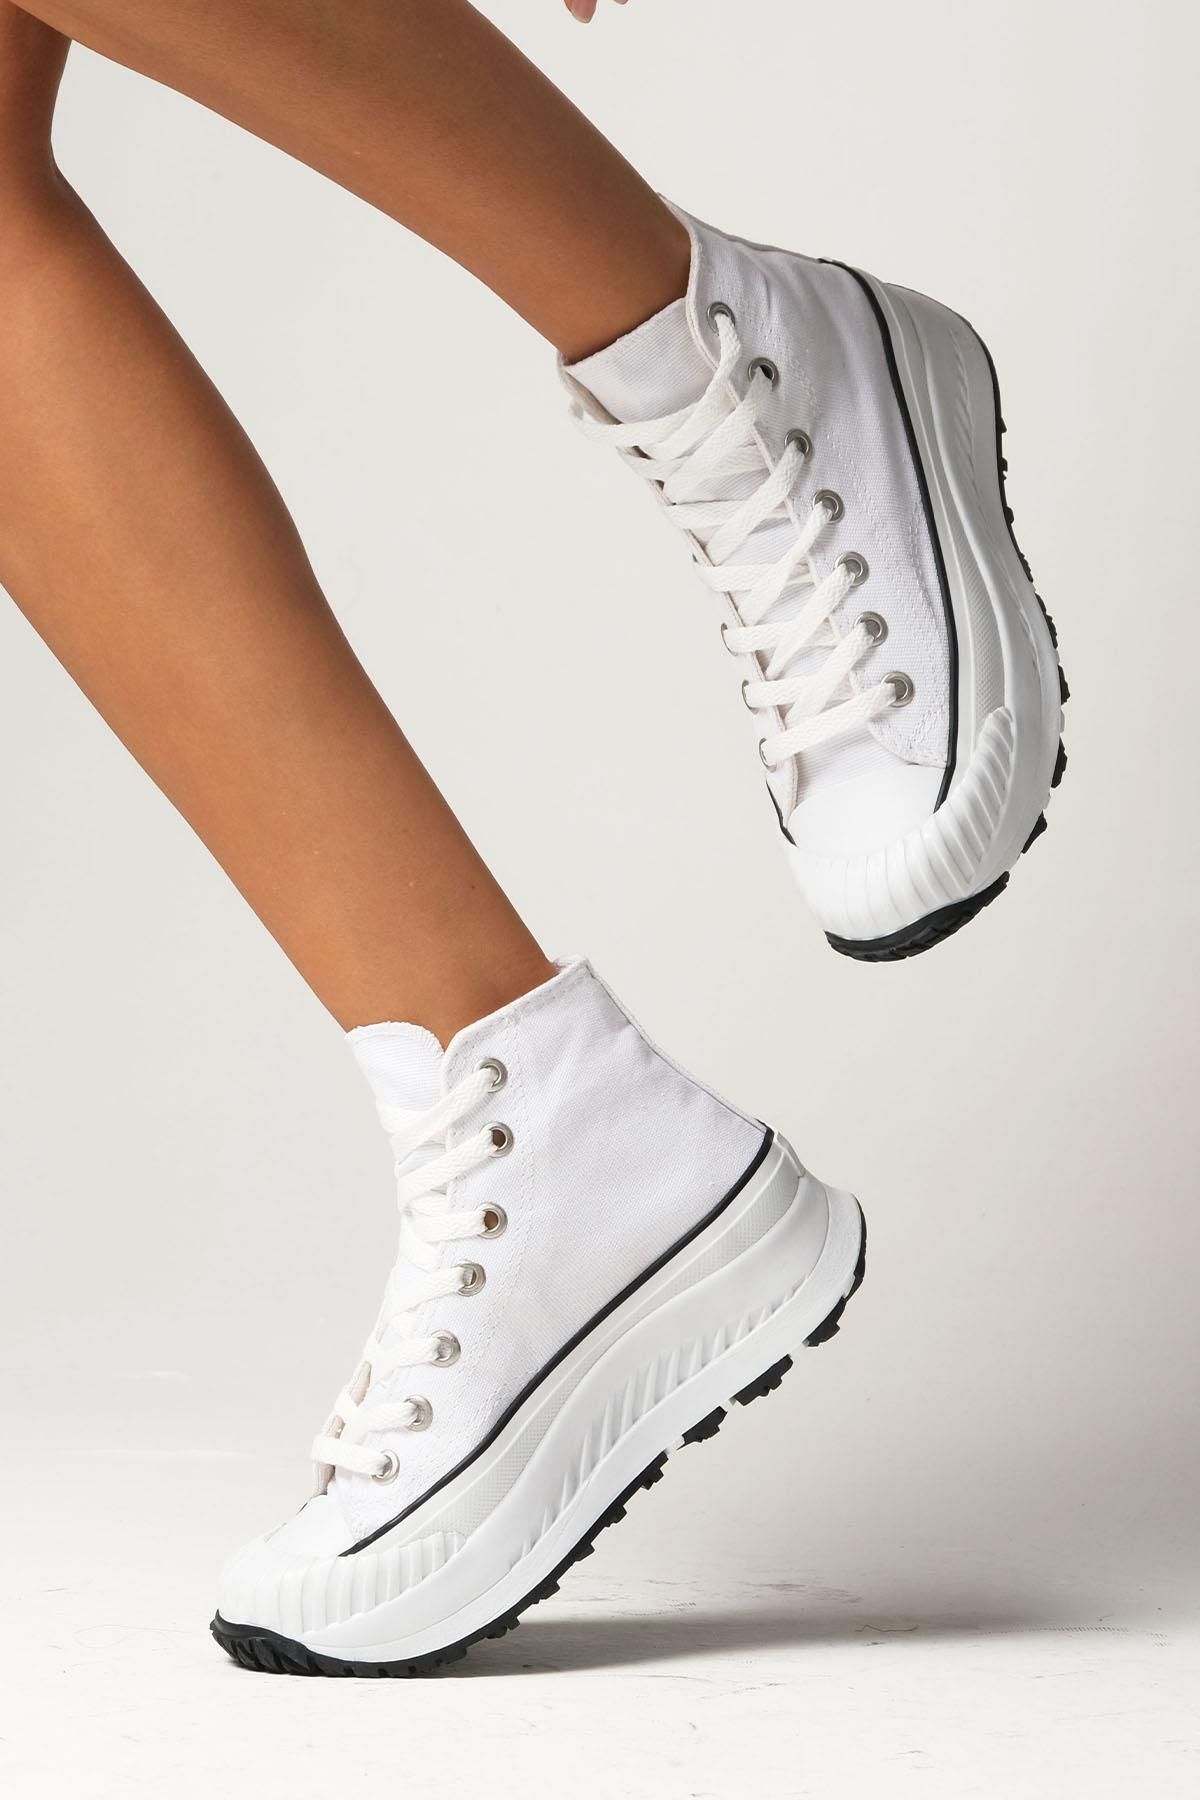 Mio Gusto Bendis Beyaz Renk Keten Kalın Tabanlı Yüksek Bilekli Günlük Kadın Sneaker Ayakkabı